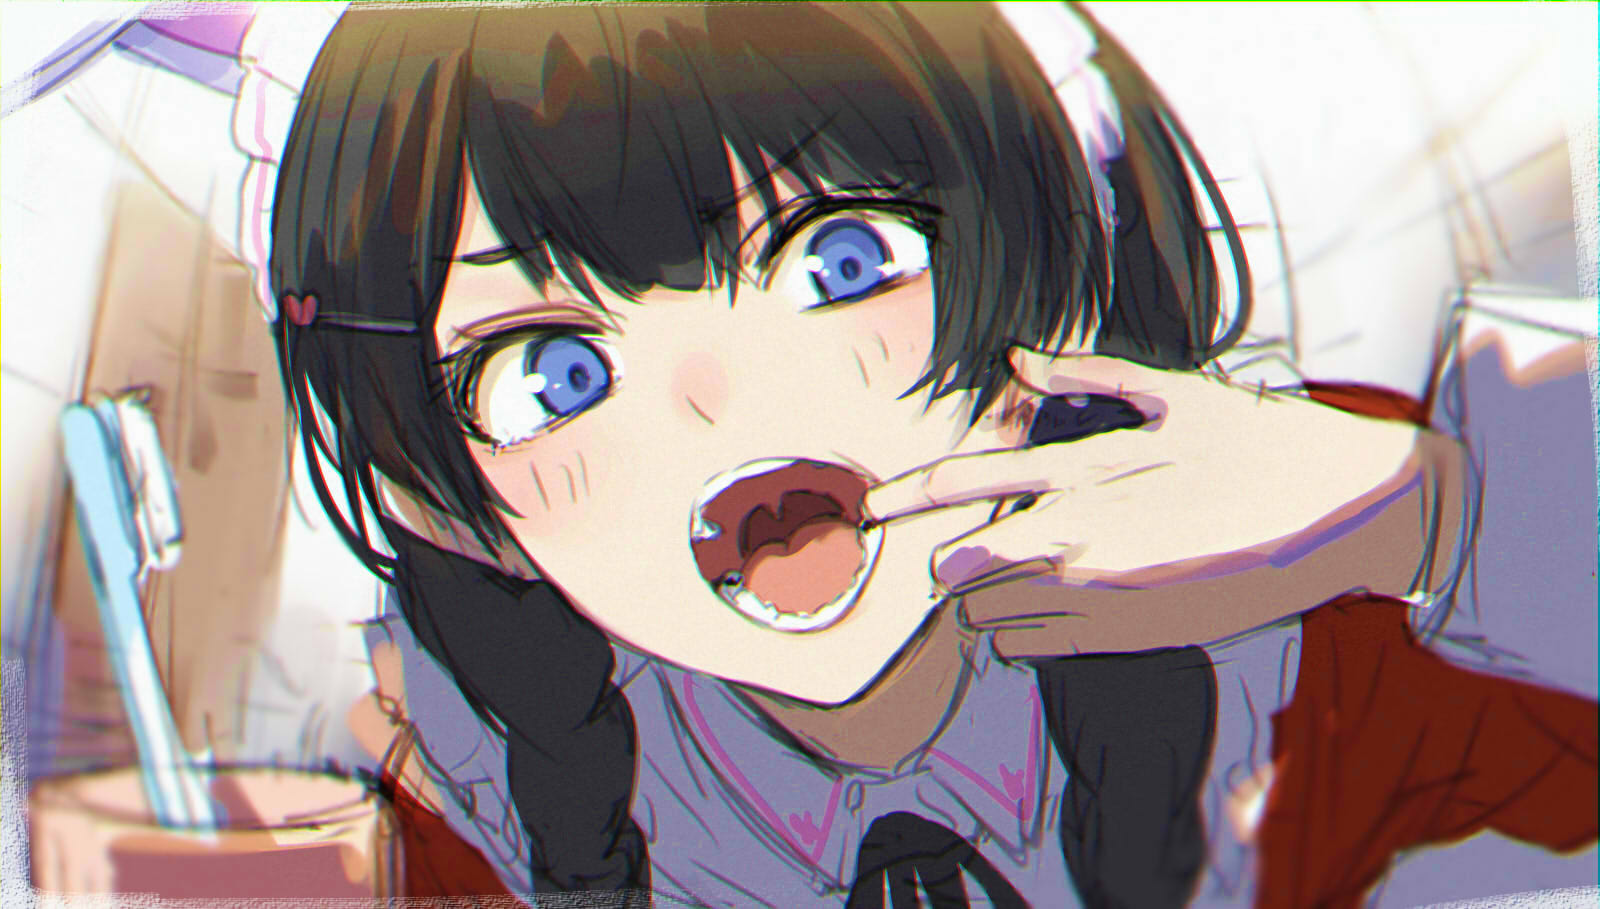 Anime Anime Girls Digital Art Artwork 2D Portrait Isshiki Black Hair Blue Eyes Open Mouth Reflection 1600x909